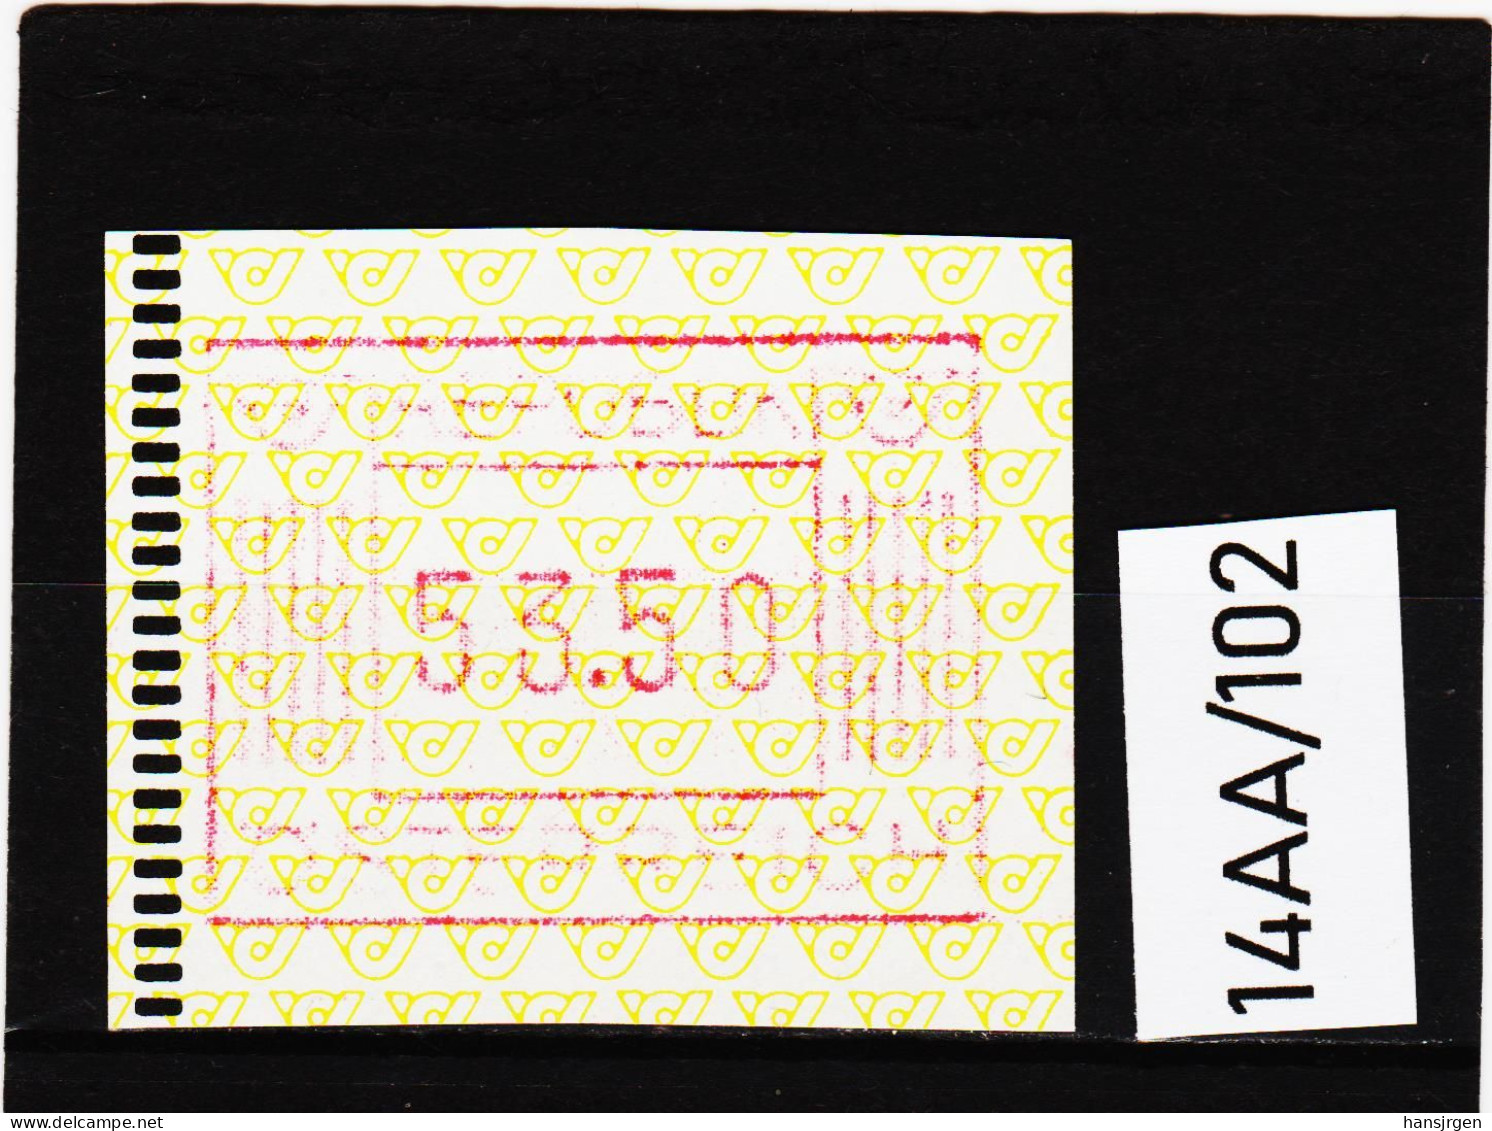 14AA/102  ÖSTERREICH 1983 AUTOMATENMARKEN 1. AUSGABE  53,50 SCHILLING   ** Postfrisch - Machine Labels [ATM]